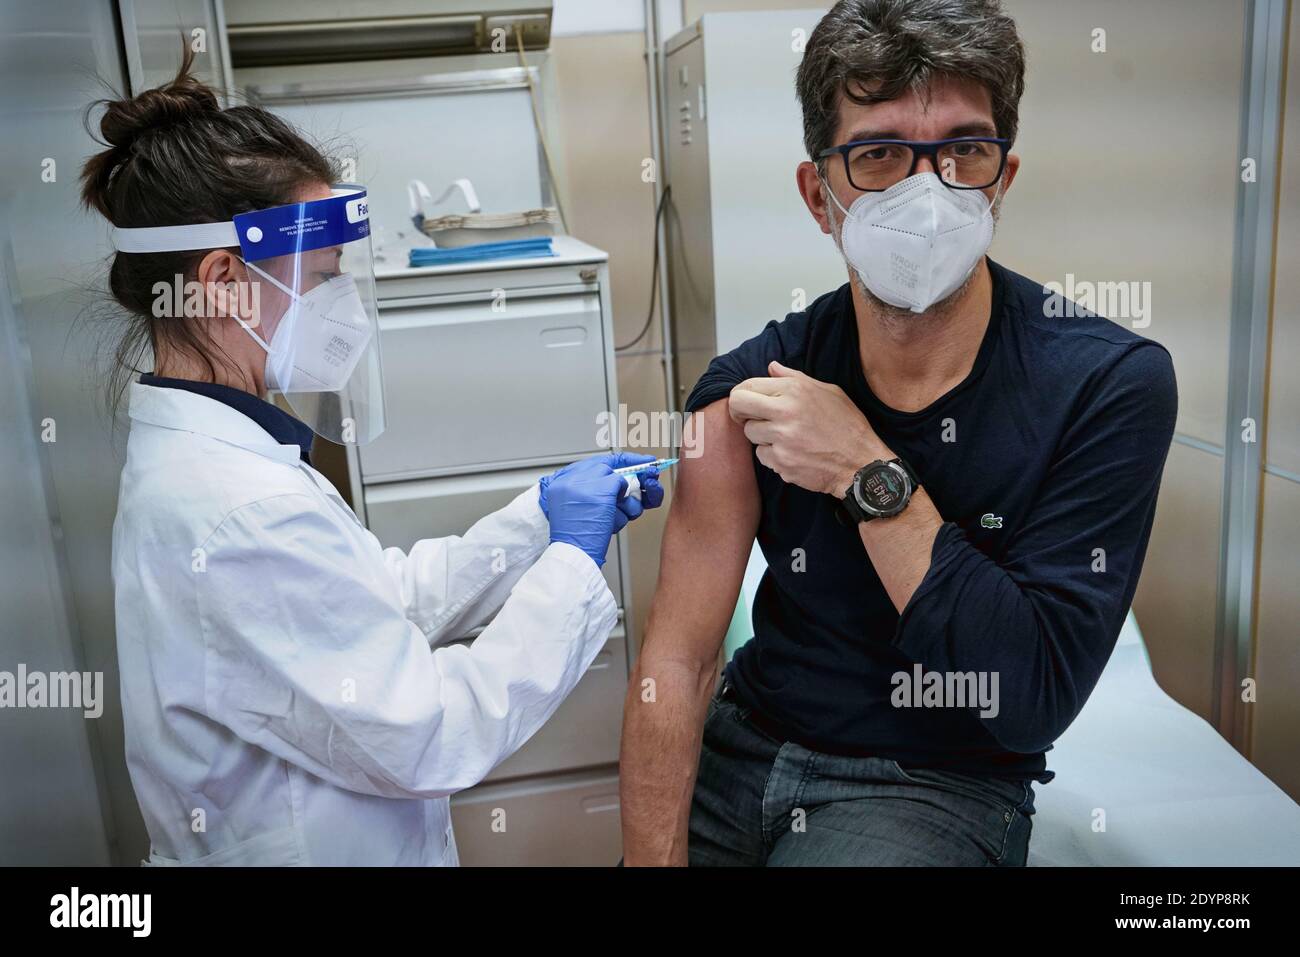 Inicio de la vacunación contra Covid-19, una persona recibe la vacuna contra el coronavirus de Pfizer, en el Hospital Amedeo di Savoia. Turín, Italia - 2 de diciembre Foto de stock